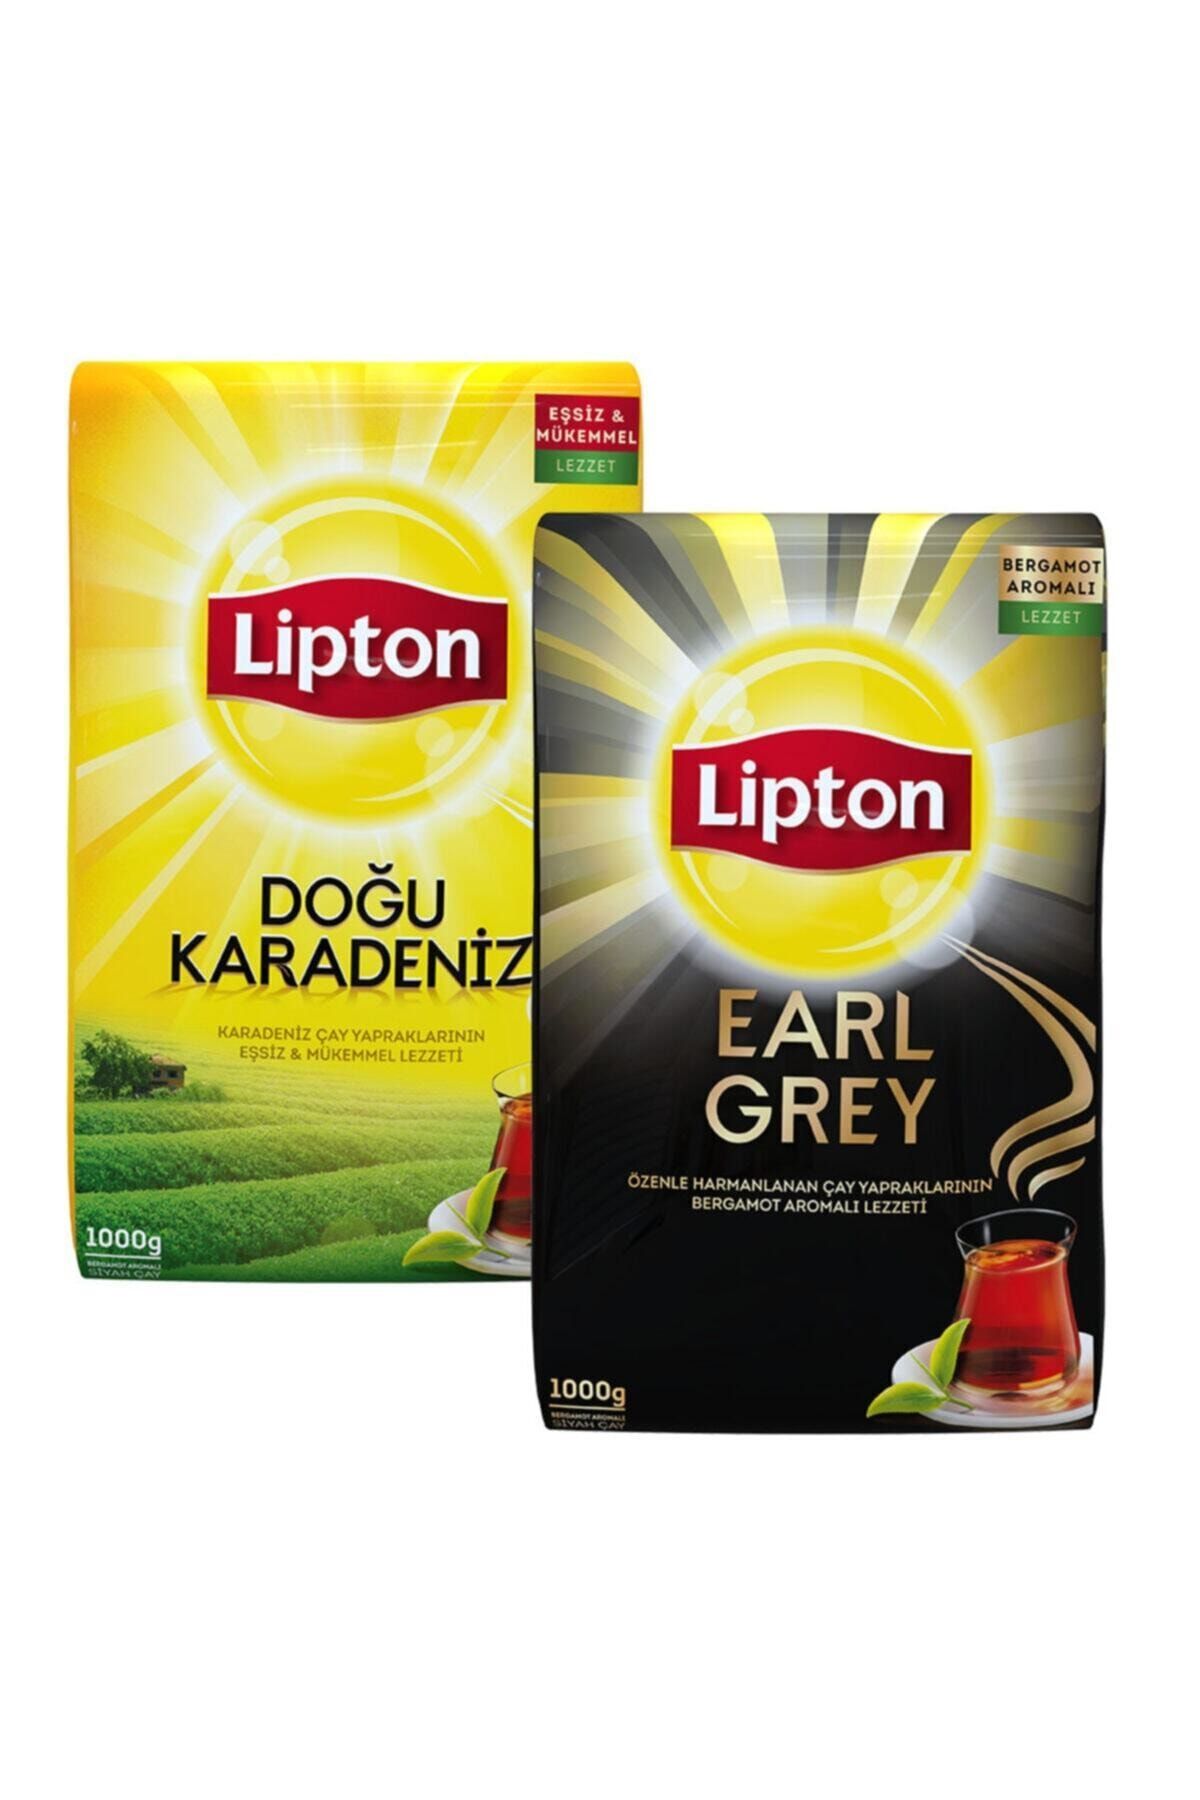 Lipton Doğu Karadeniz Dökme Çay 1000gr + Earl Grey Dökme Çay 1000gr